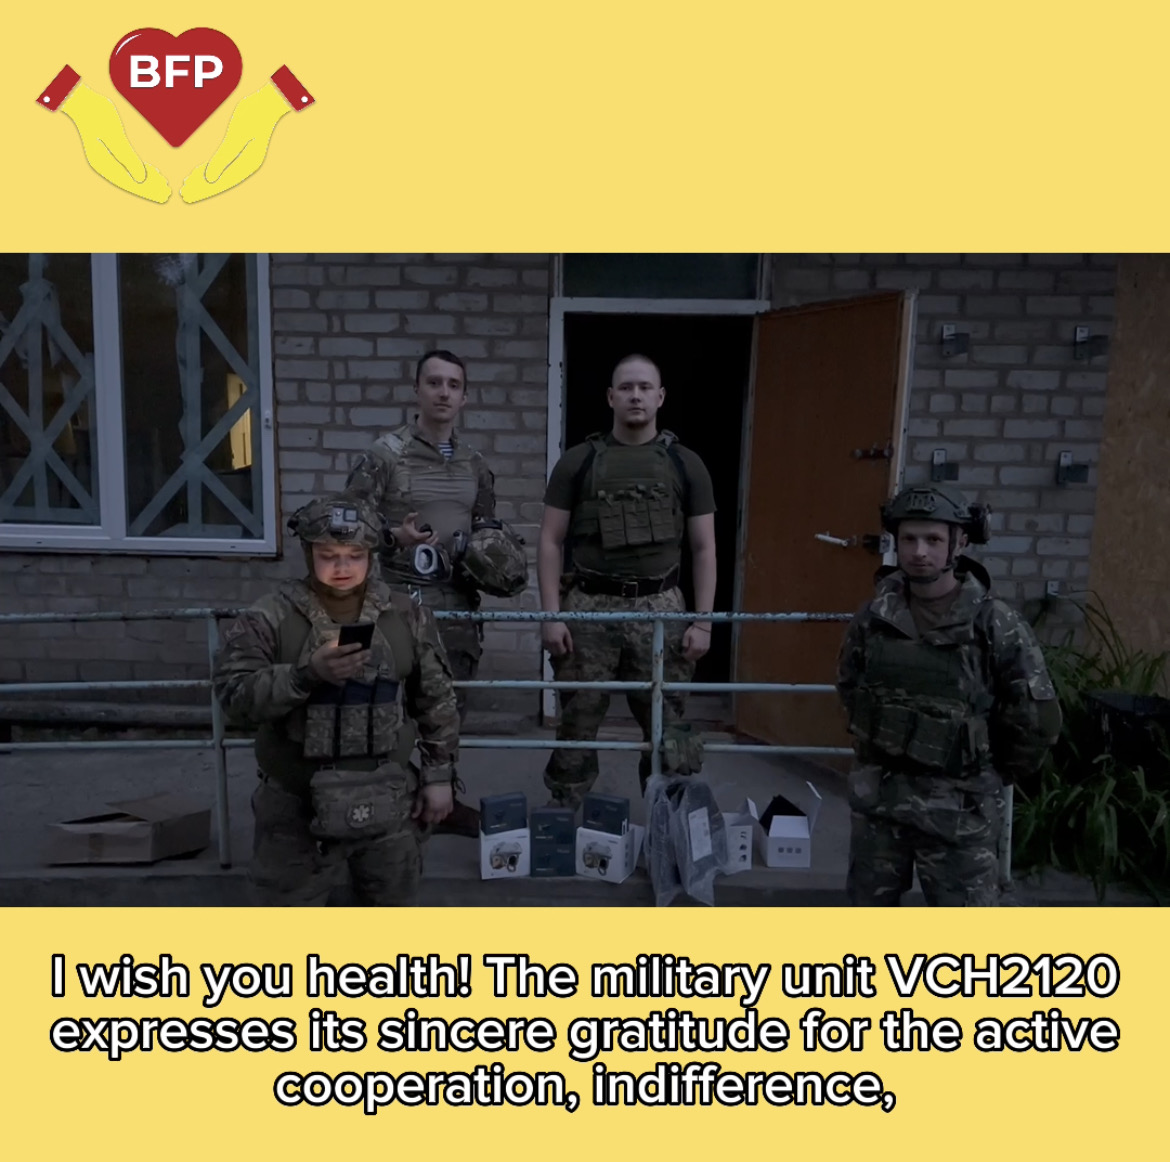 Dostarczyliśmy dużą pomoc humanitarną żołnierzom na Ukrainie! 💪